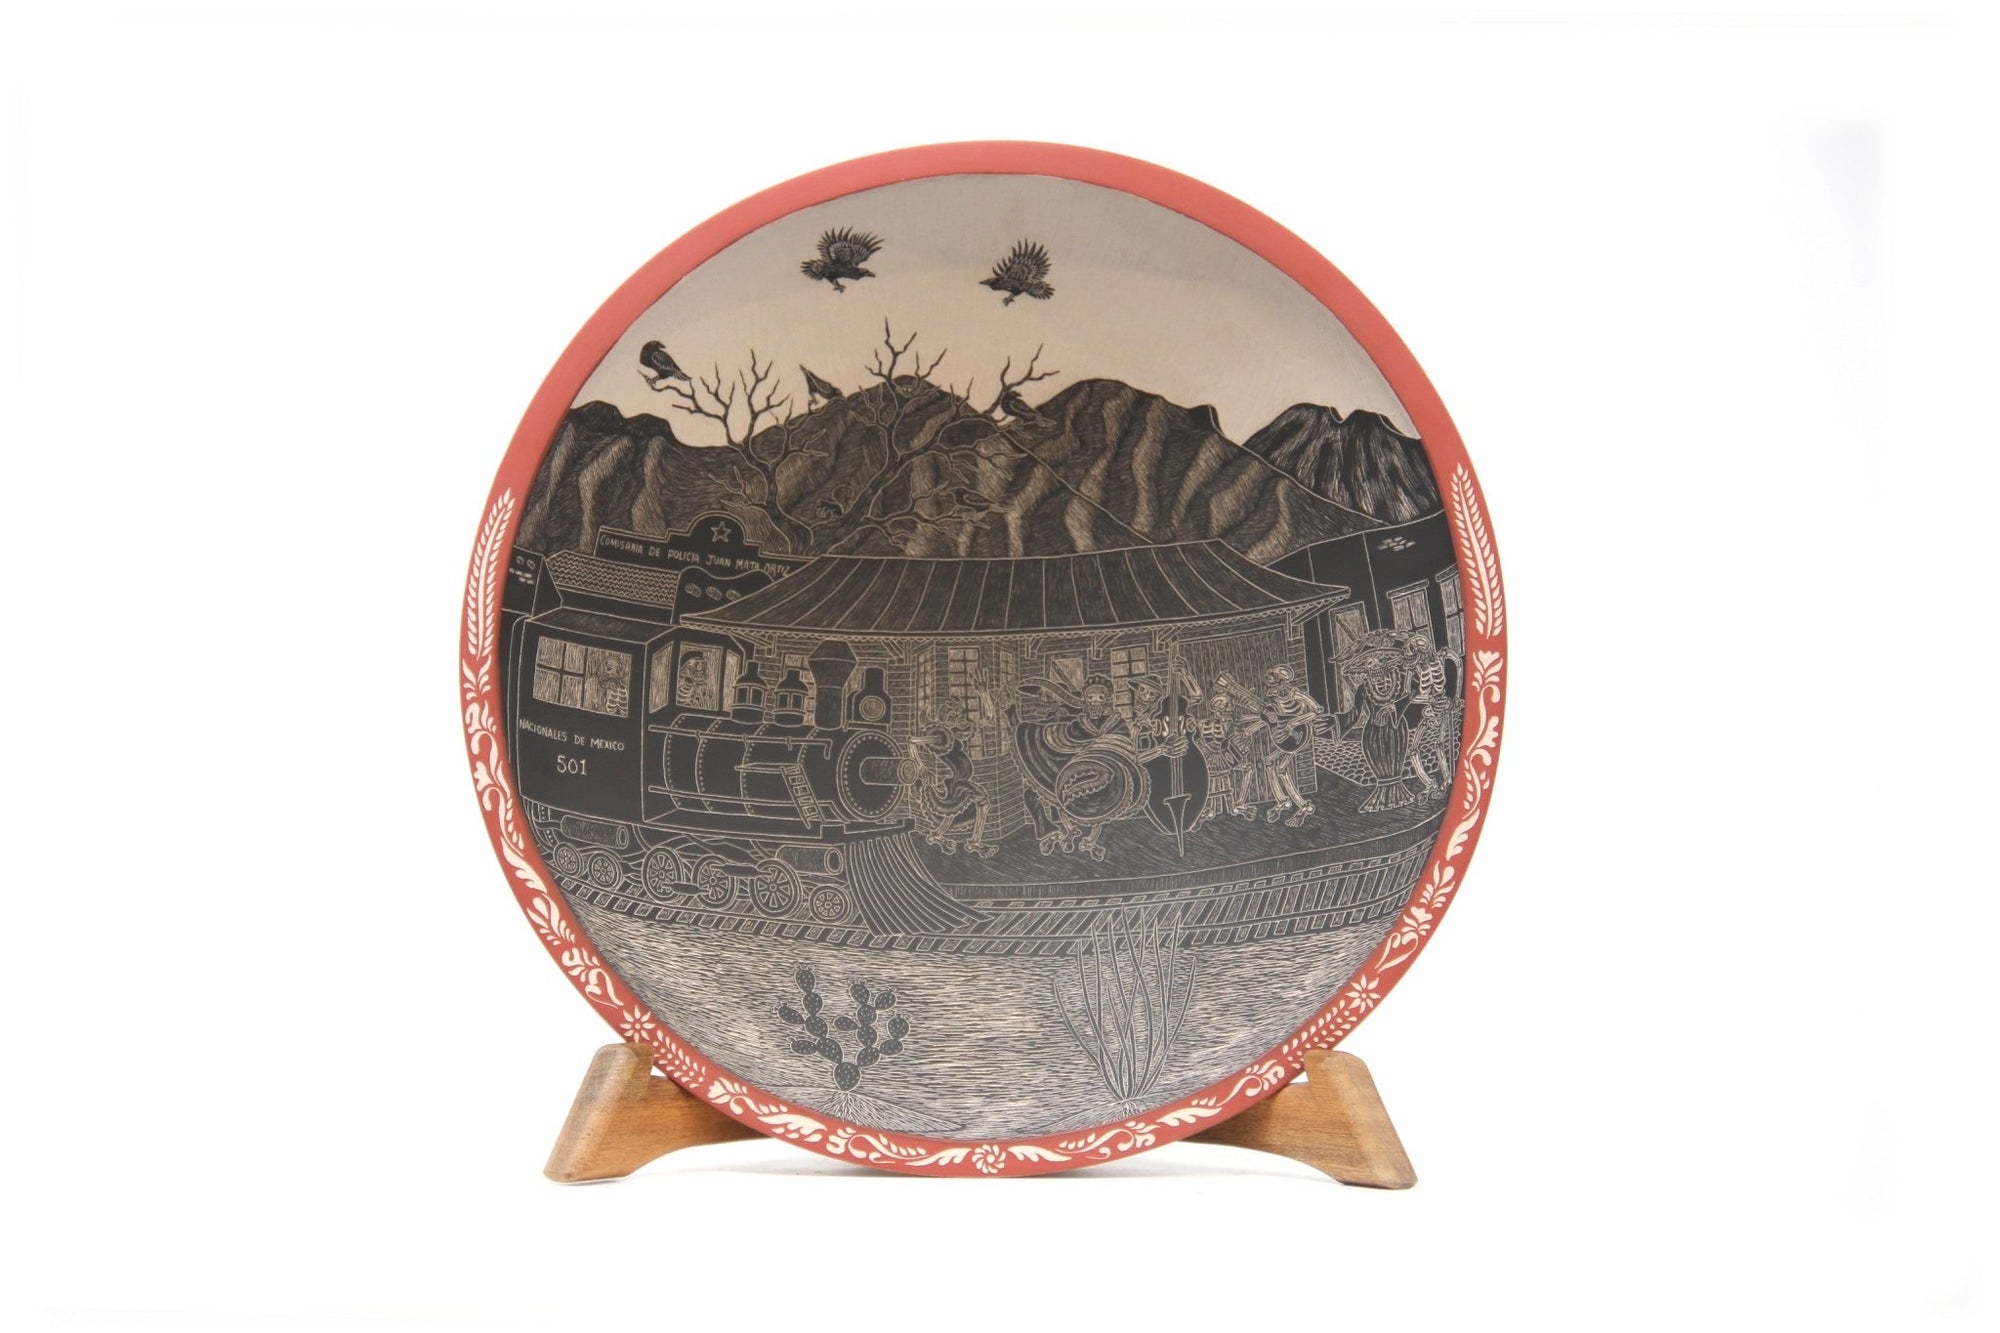 Céramique Mata Ortiz - Assiette du jour des morts - Chemin de fer du jour - Art Huichol - Marakame